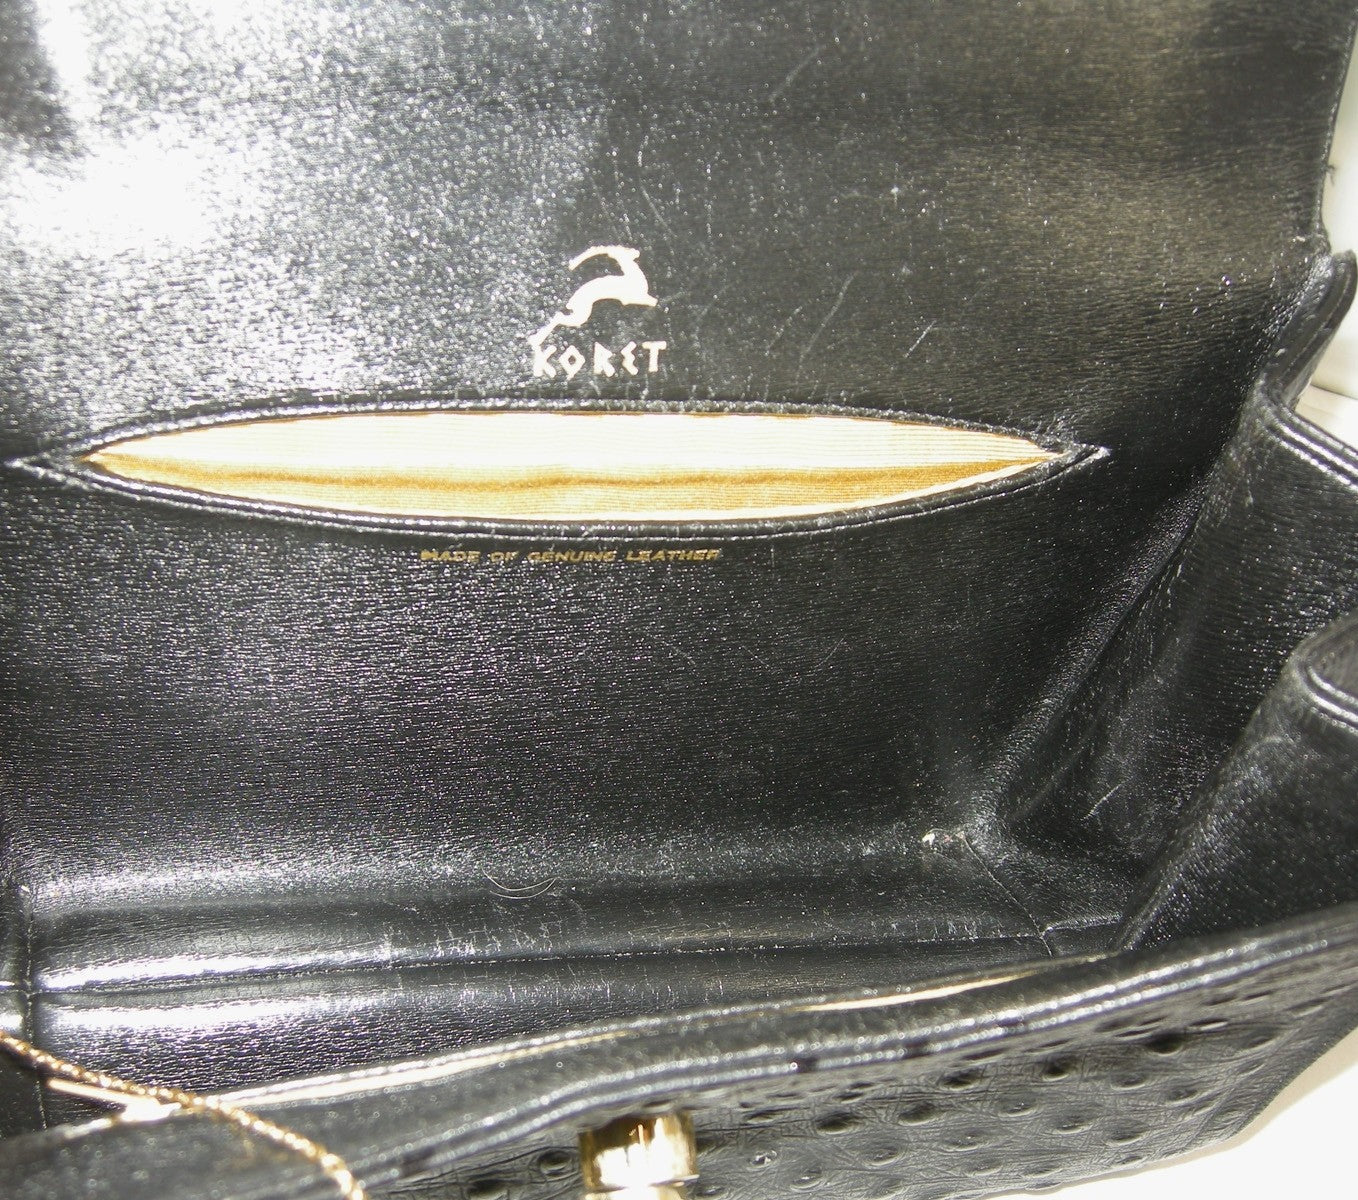 Koret 1940s Vintage Handbags